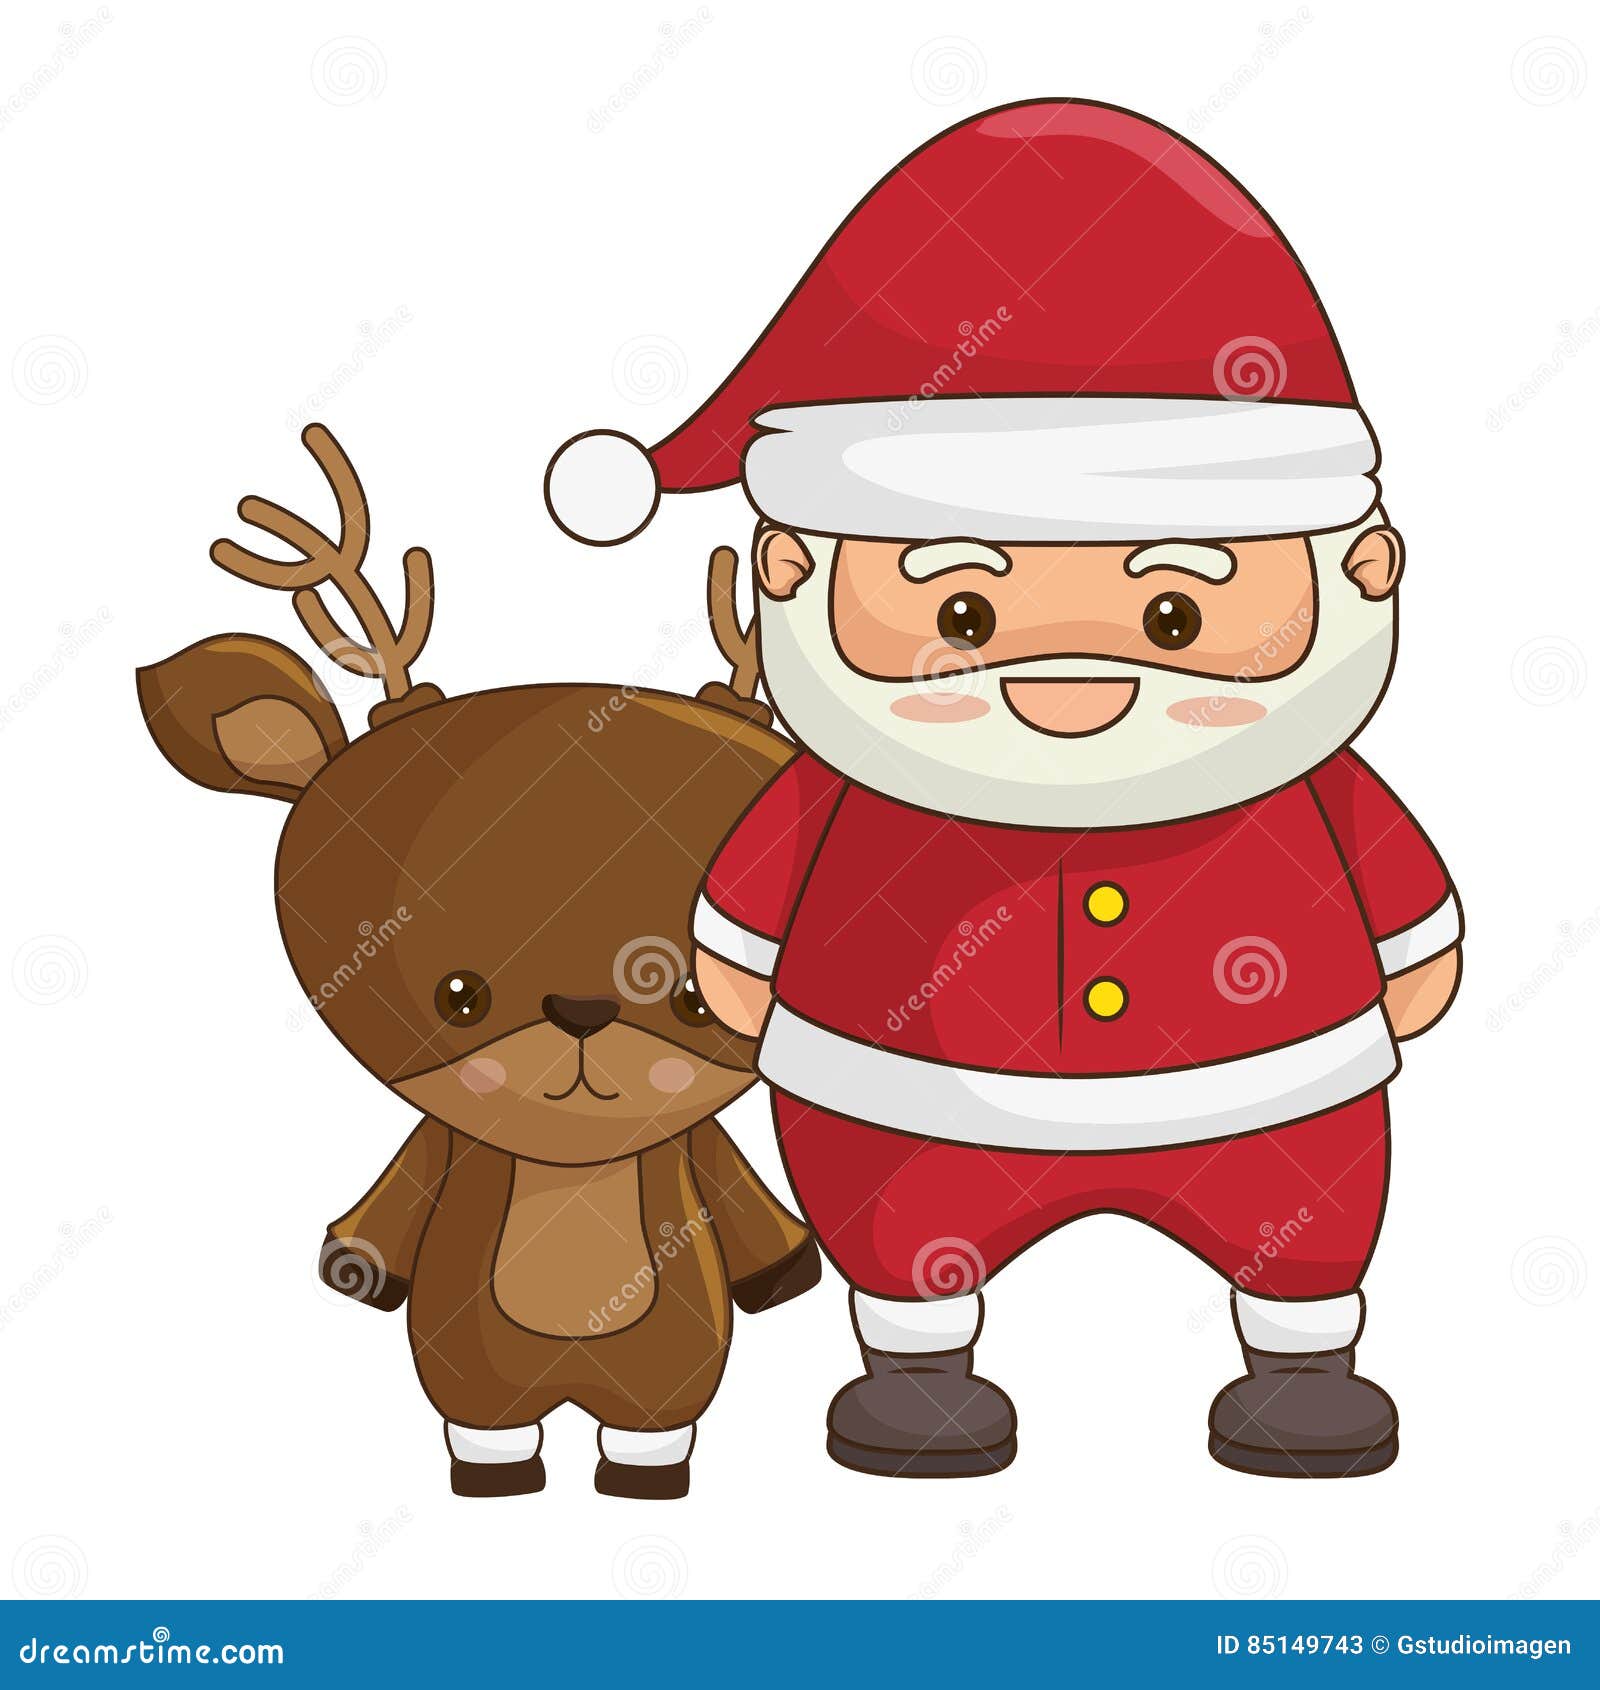 Immagini Natalizie Kawaii.Carattere Di Kawaii Del Babbo Natale Di Buon Natale Illustrazione Di Stock Illustrazione Di Vecchio Dicembre 85149743